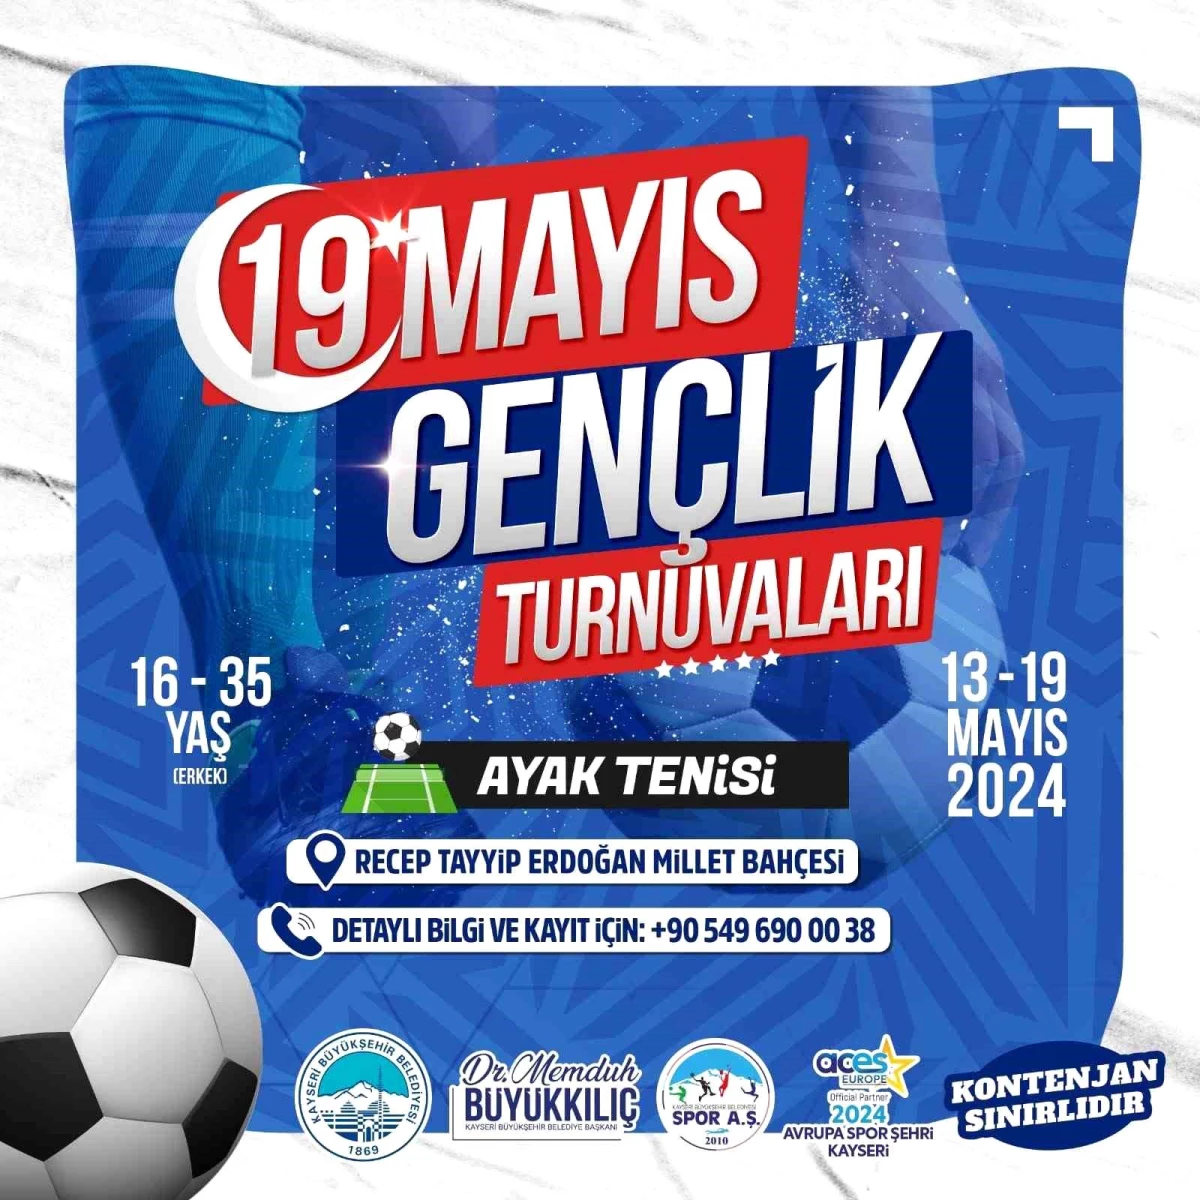 Kayseri Büyükşehir Belediyesi Gençlik Turnuvaları Başlıyor